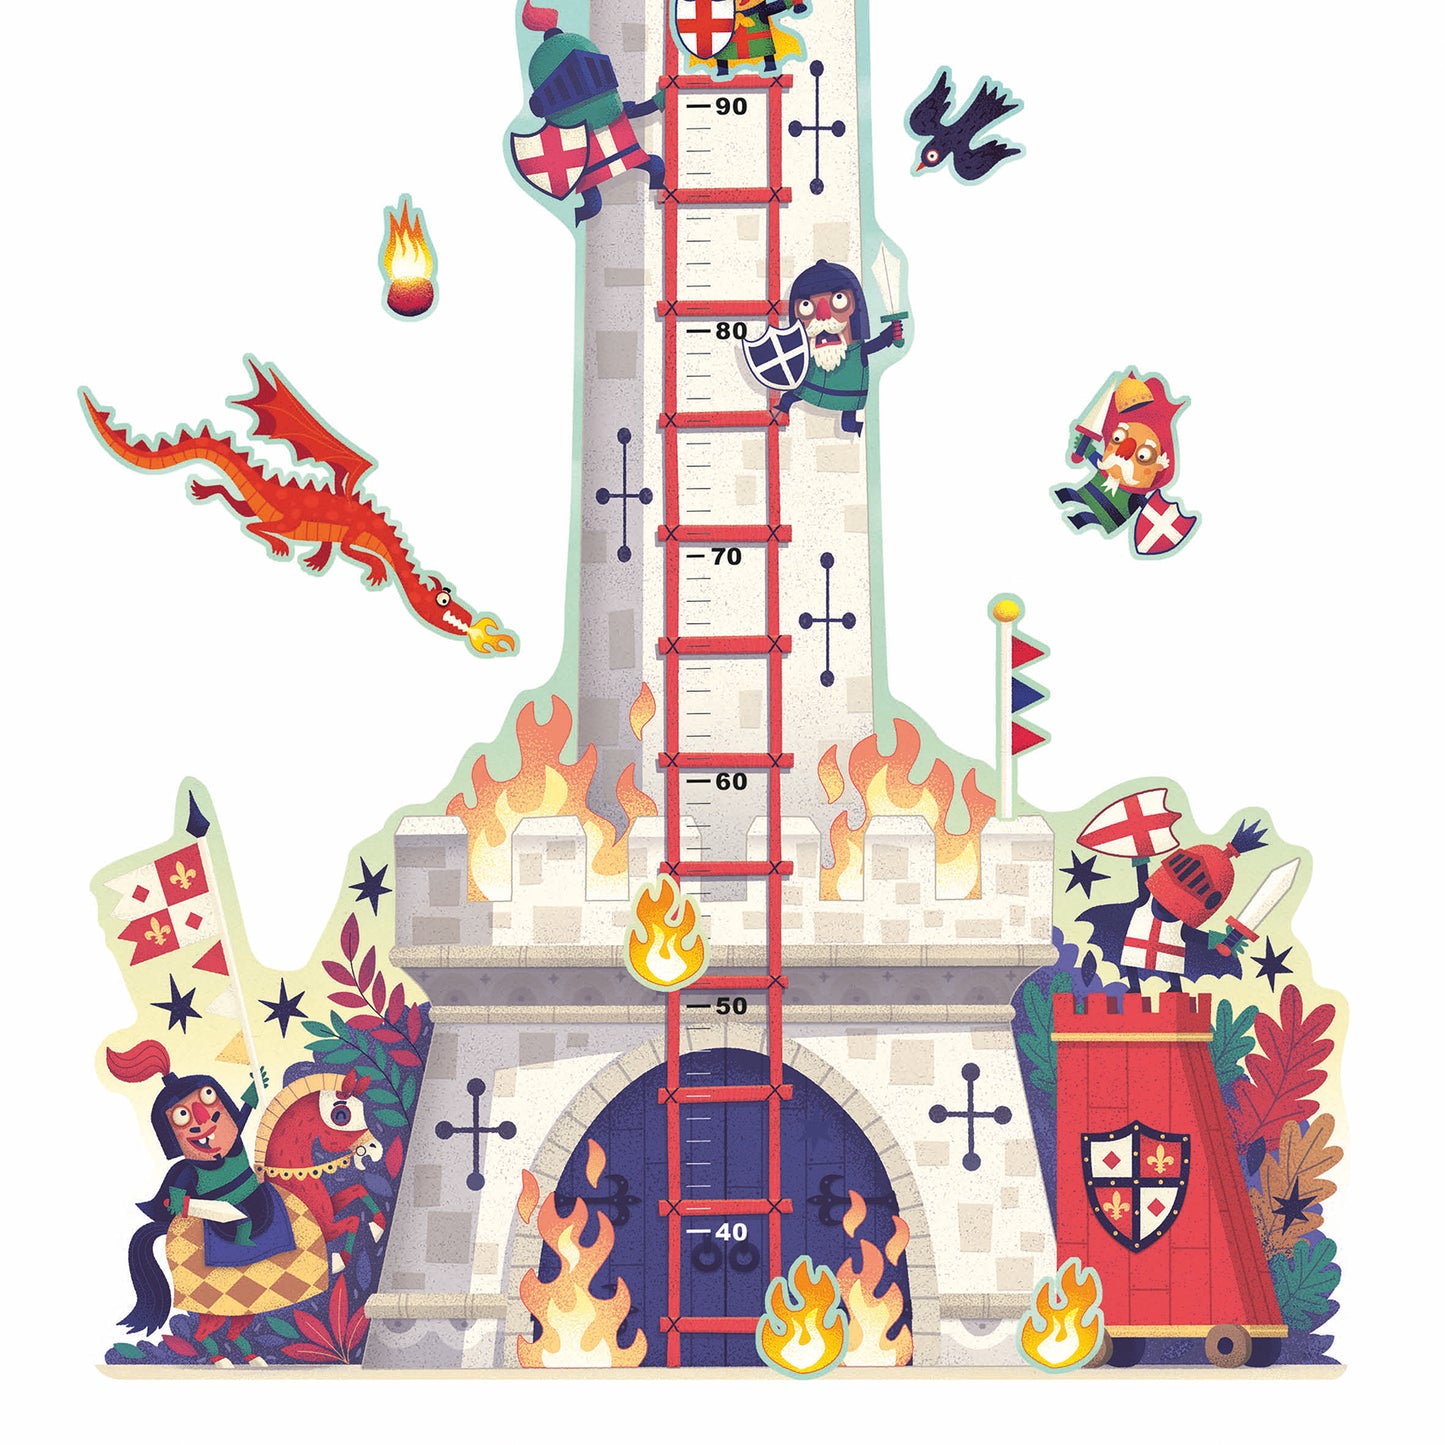 Metro murale - La torre dei cavalieri